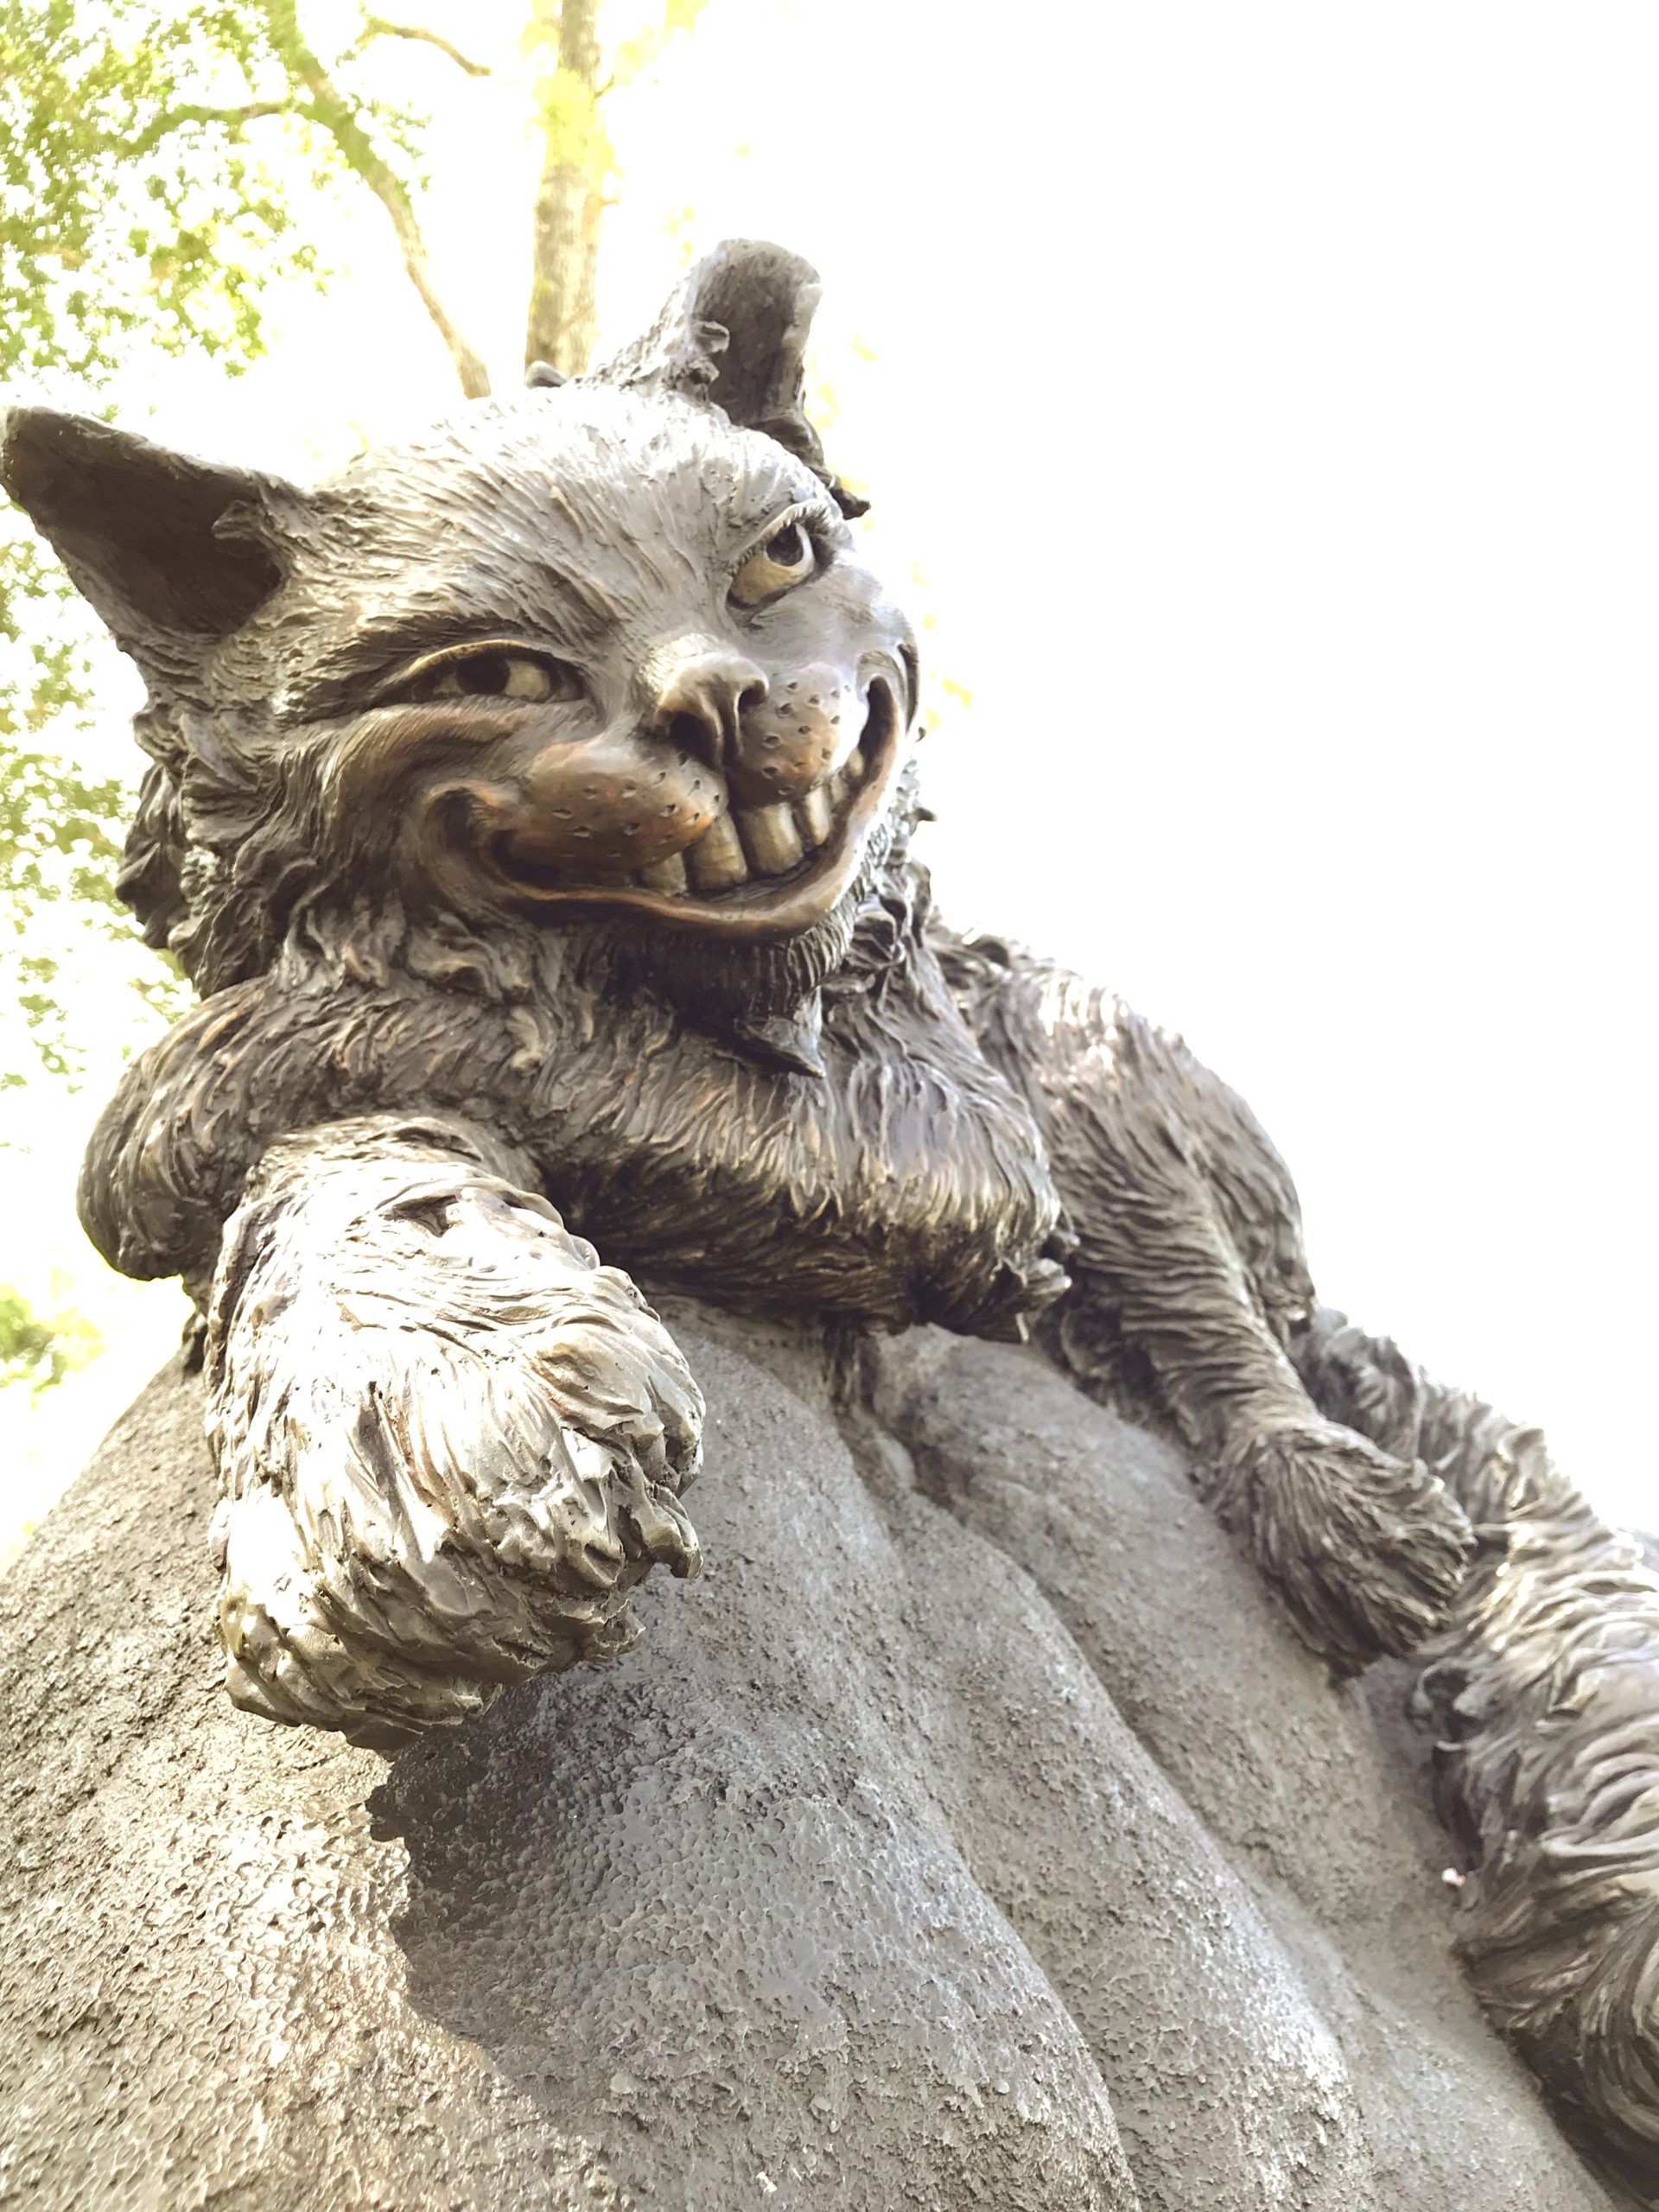 Cheshire cat in Wonderland by Houston, Texas sculptor Bridgette Mongeon